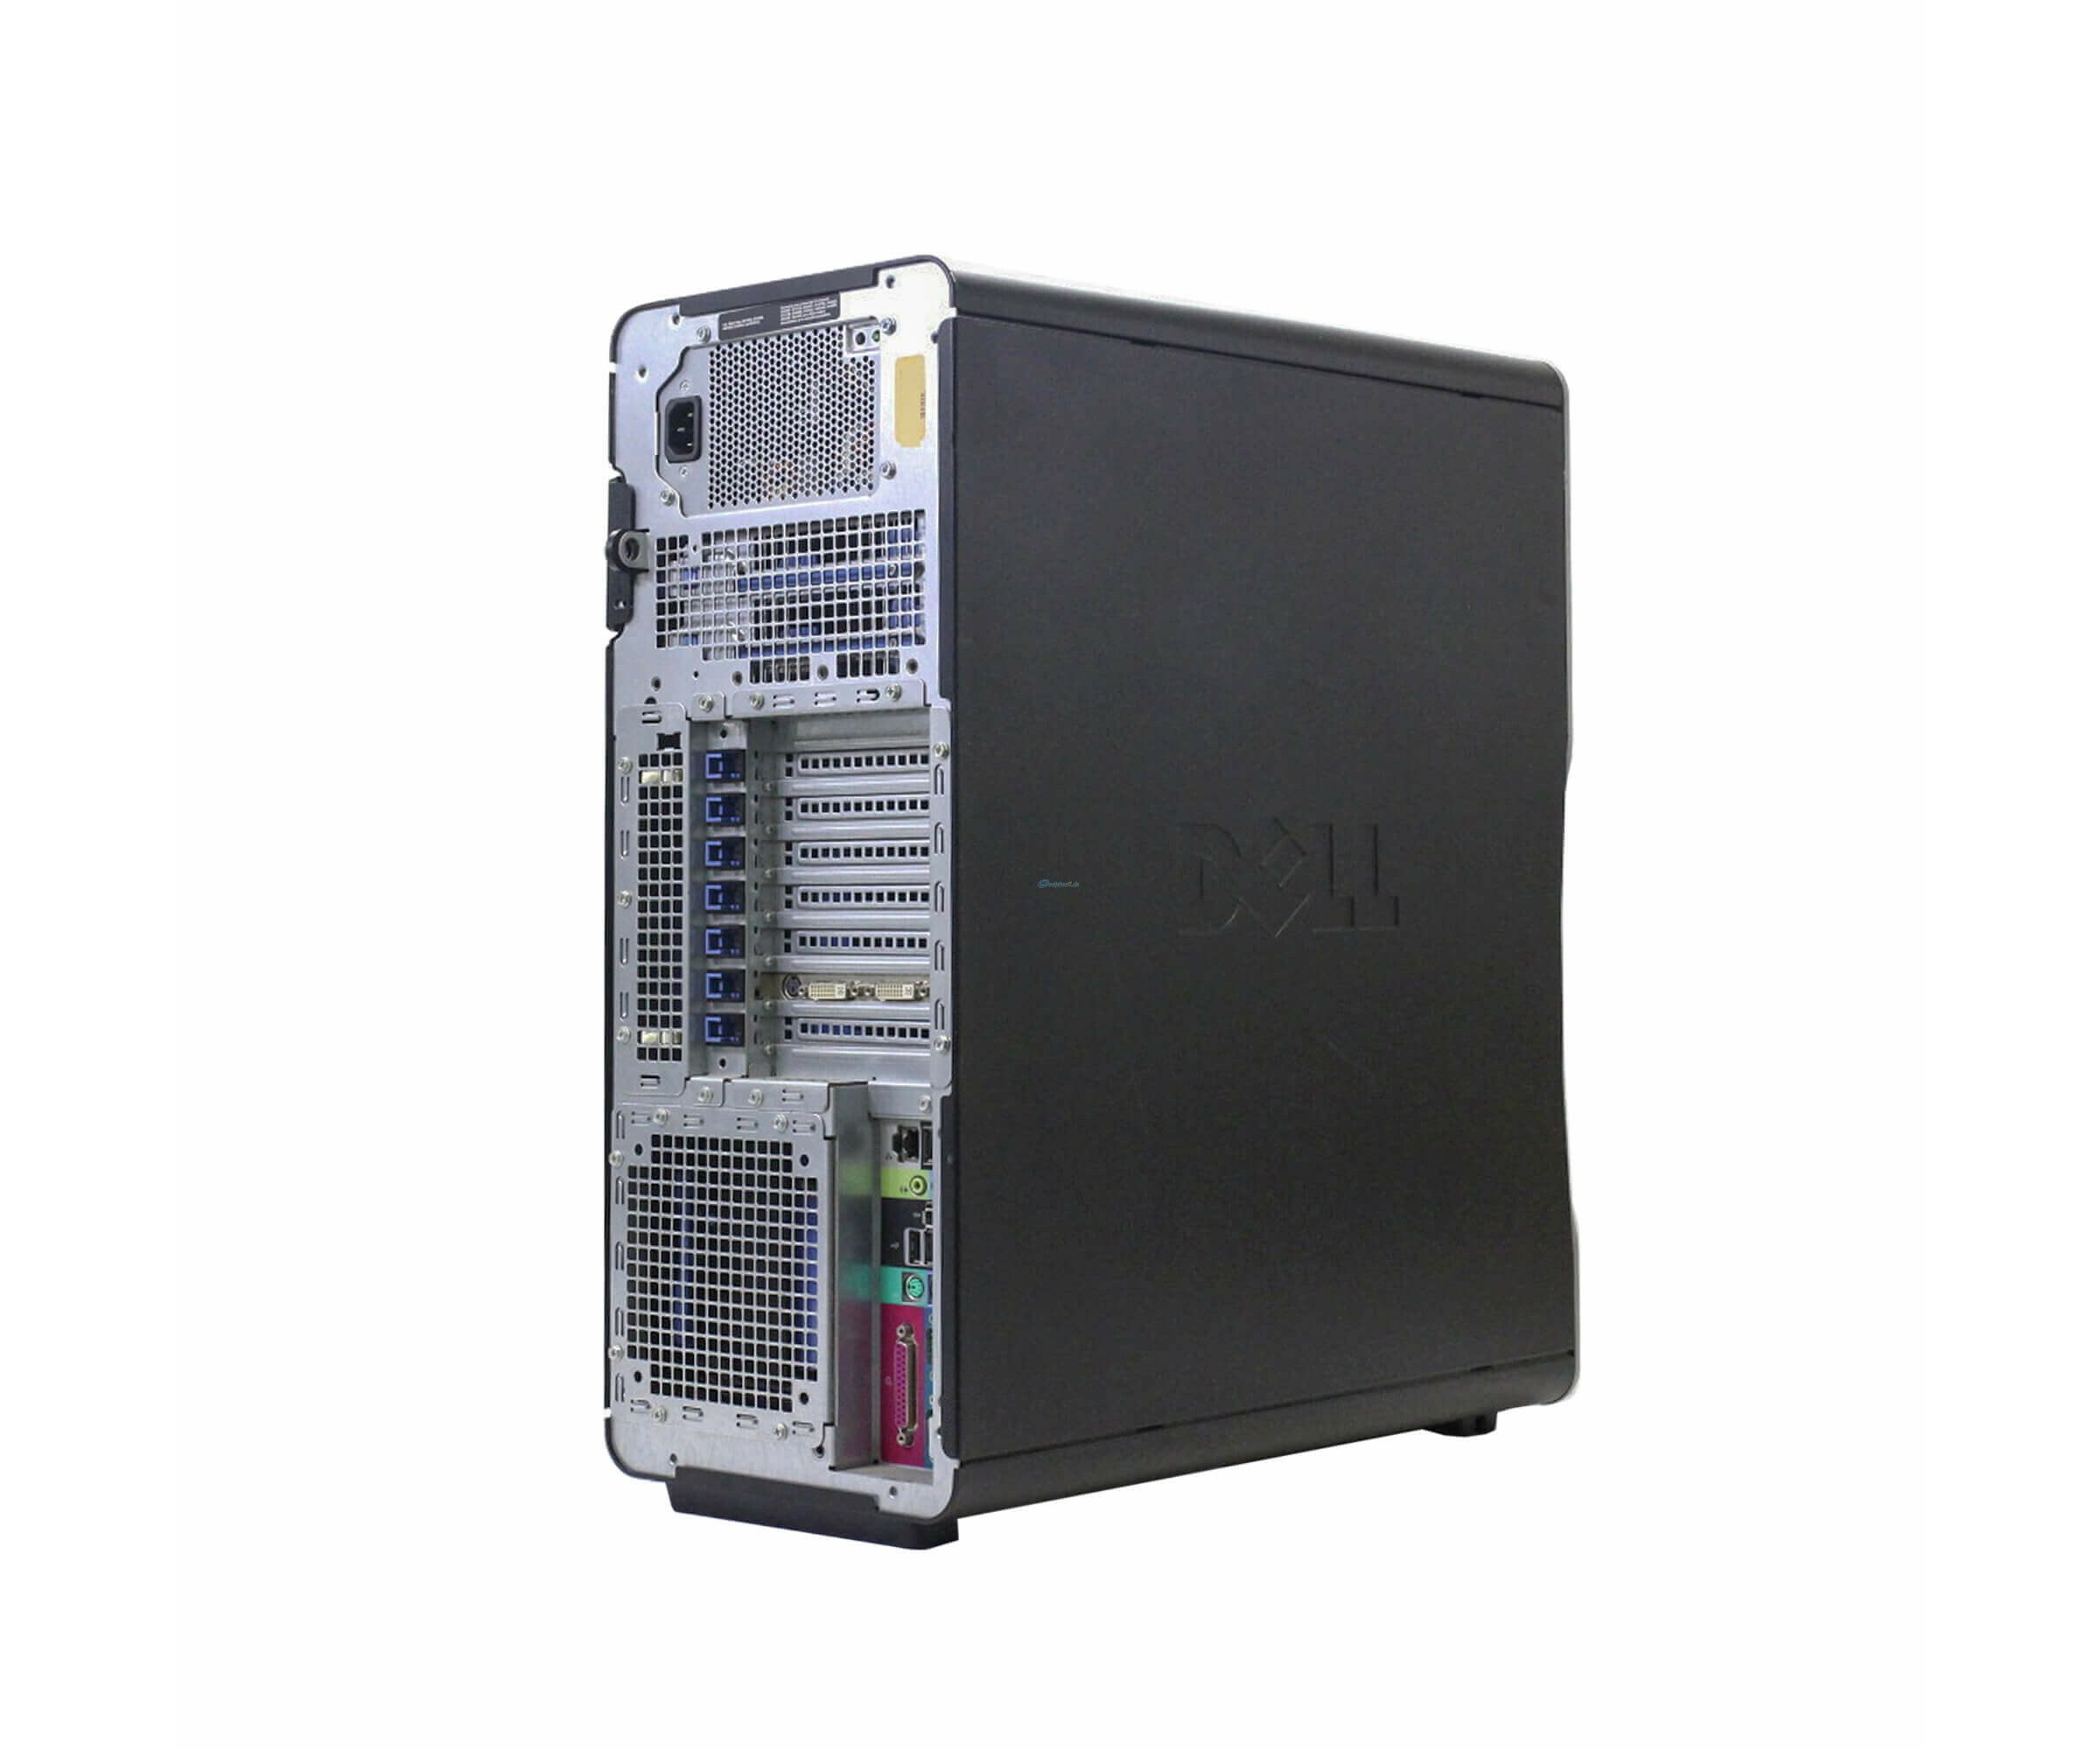 Dell Precision T7400 Workstation | Intel Xeon E5420 2.5Ghz | Ram 8Gb | SSD 256Gb | Windows 10 pro Workstation economica e performante